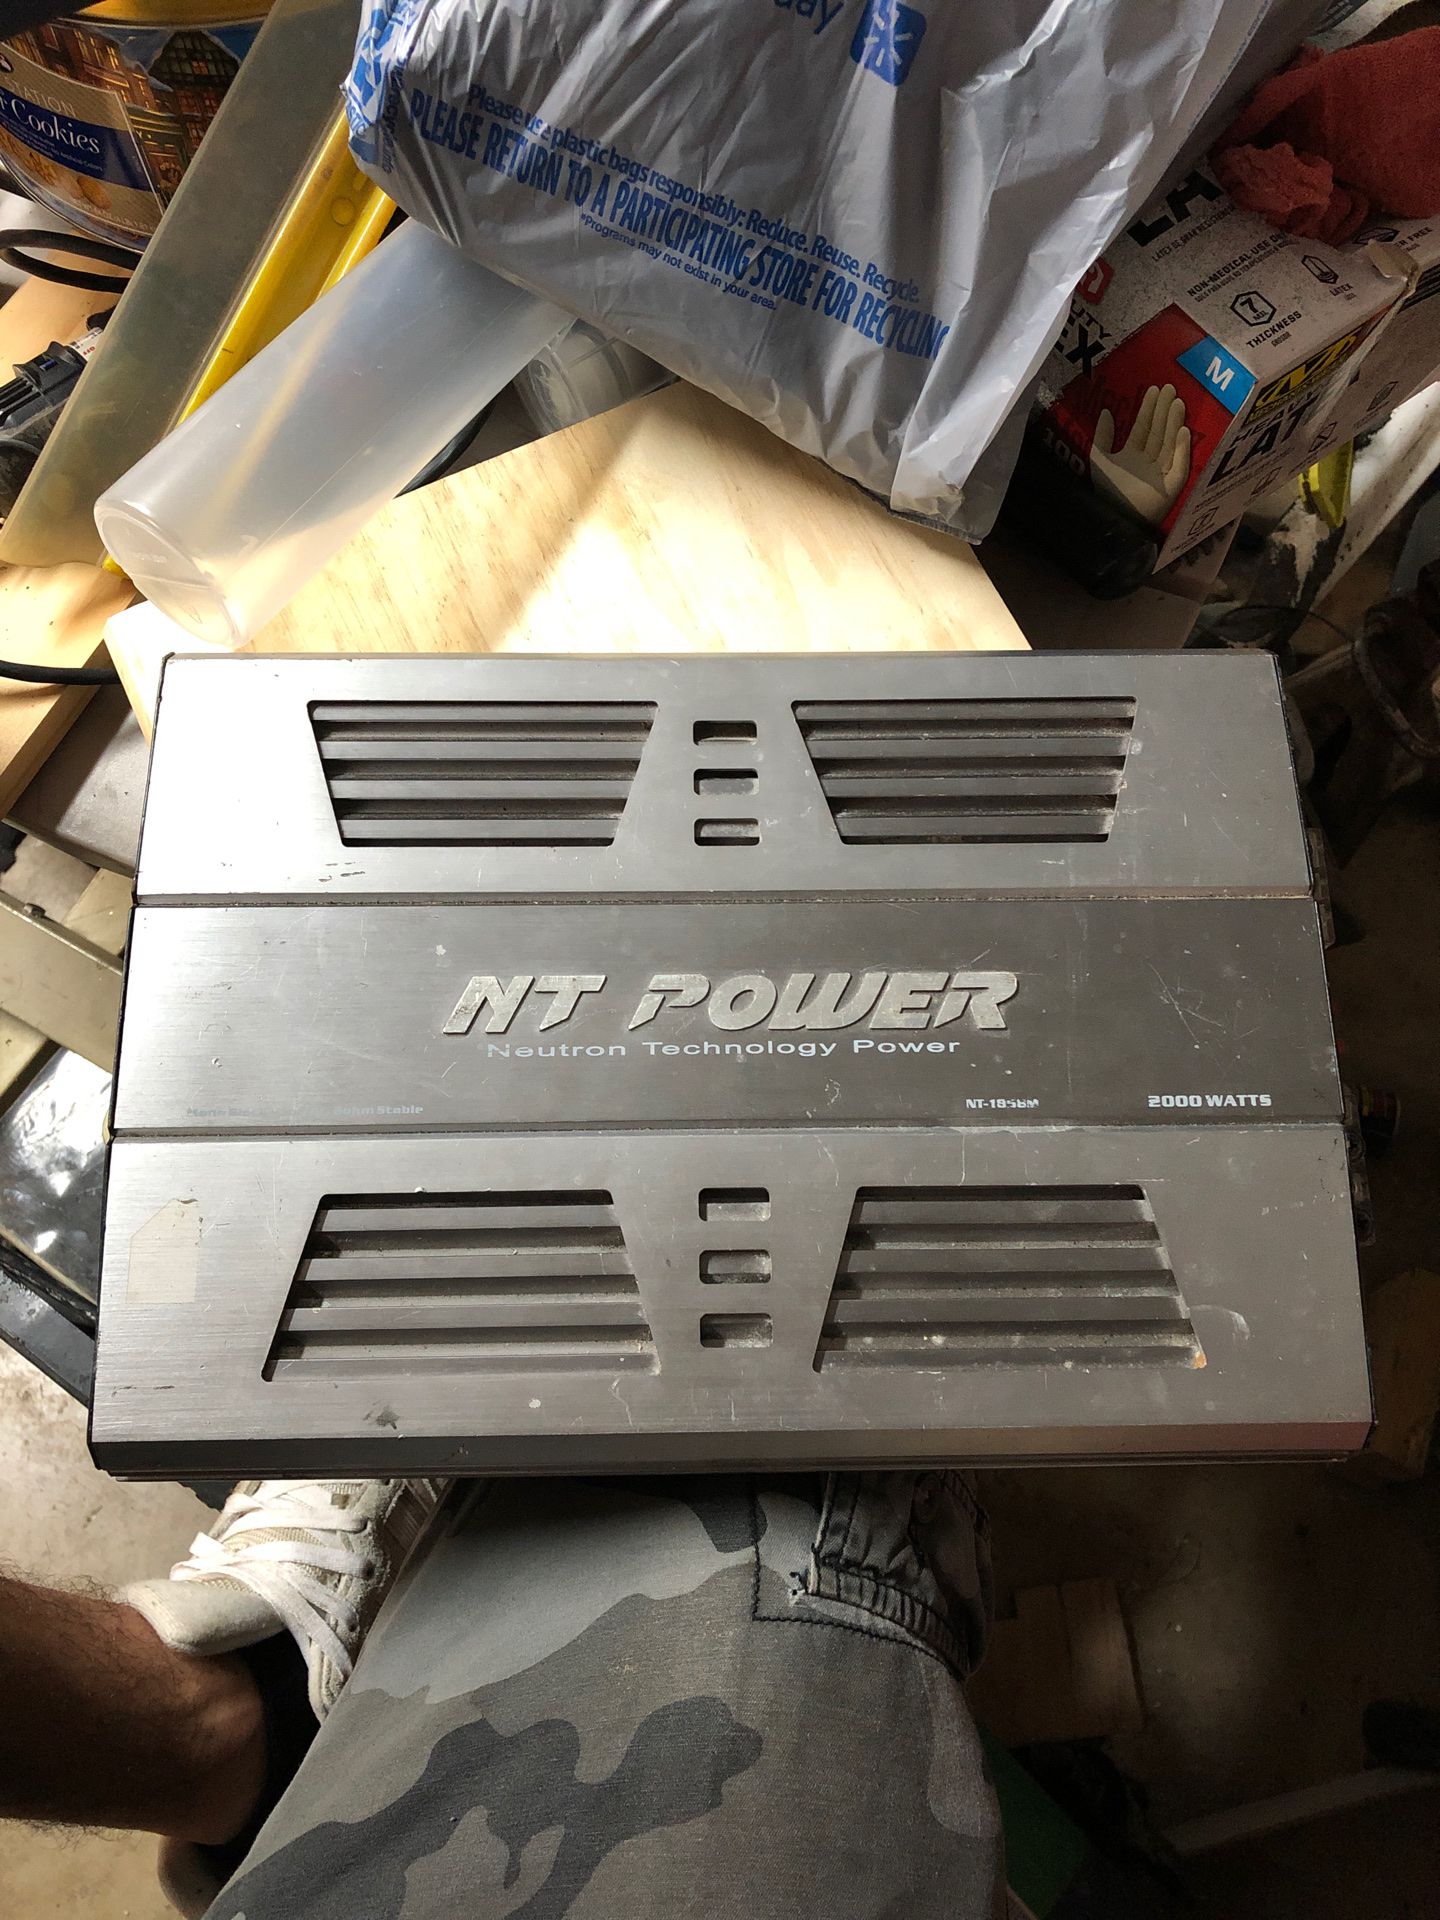 Amplifier NT Power 2000 watt amp (Neutron Technology Power)